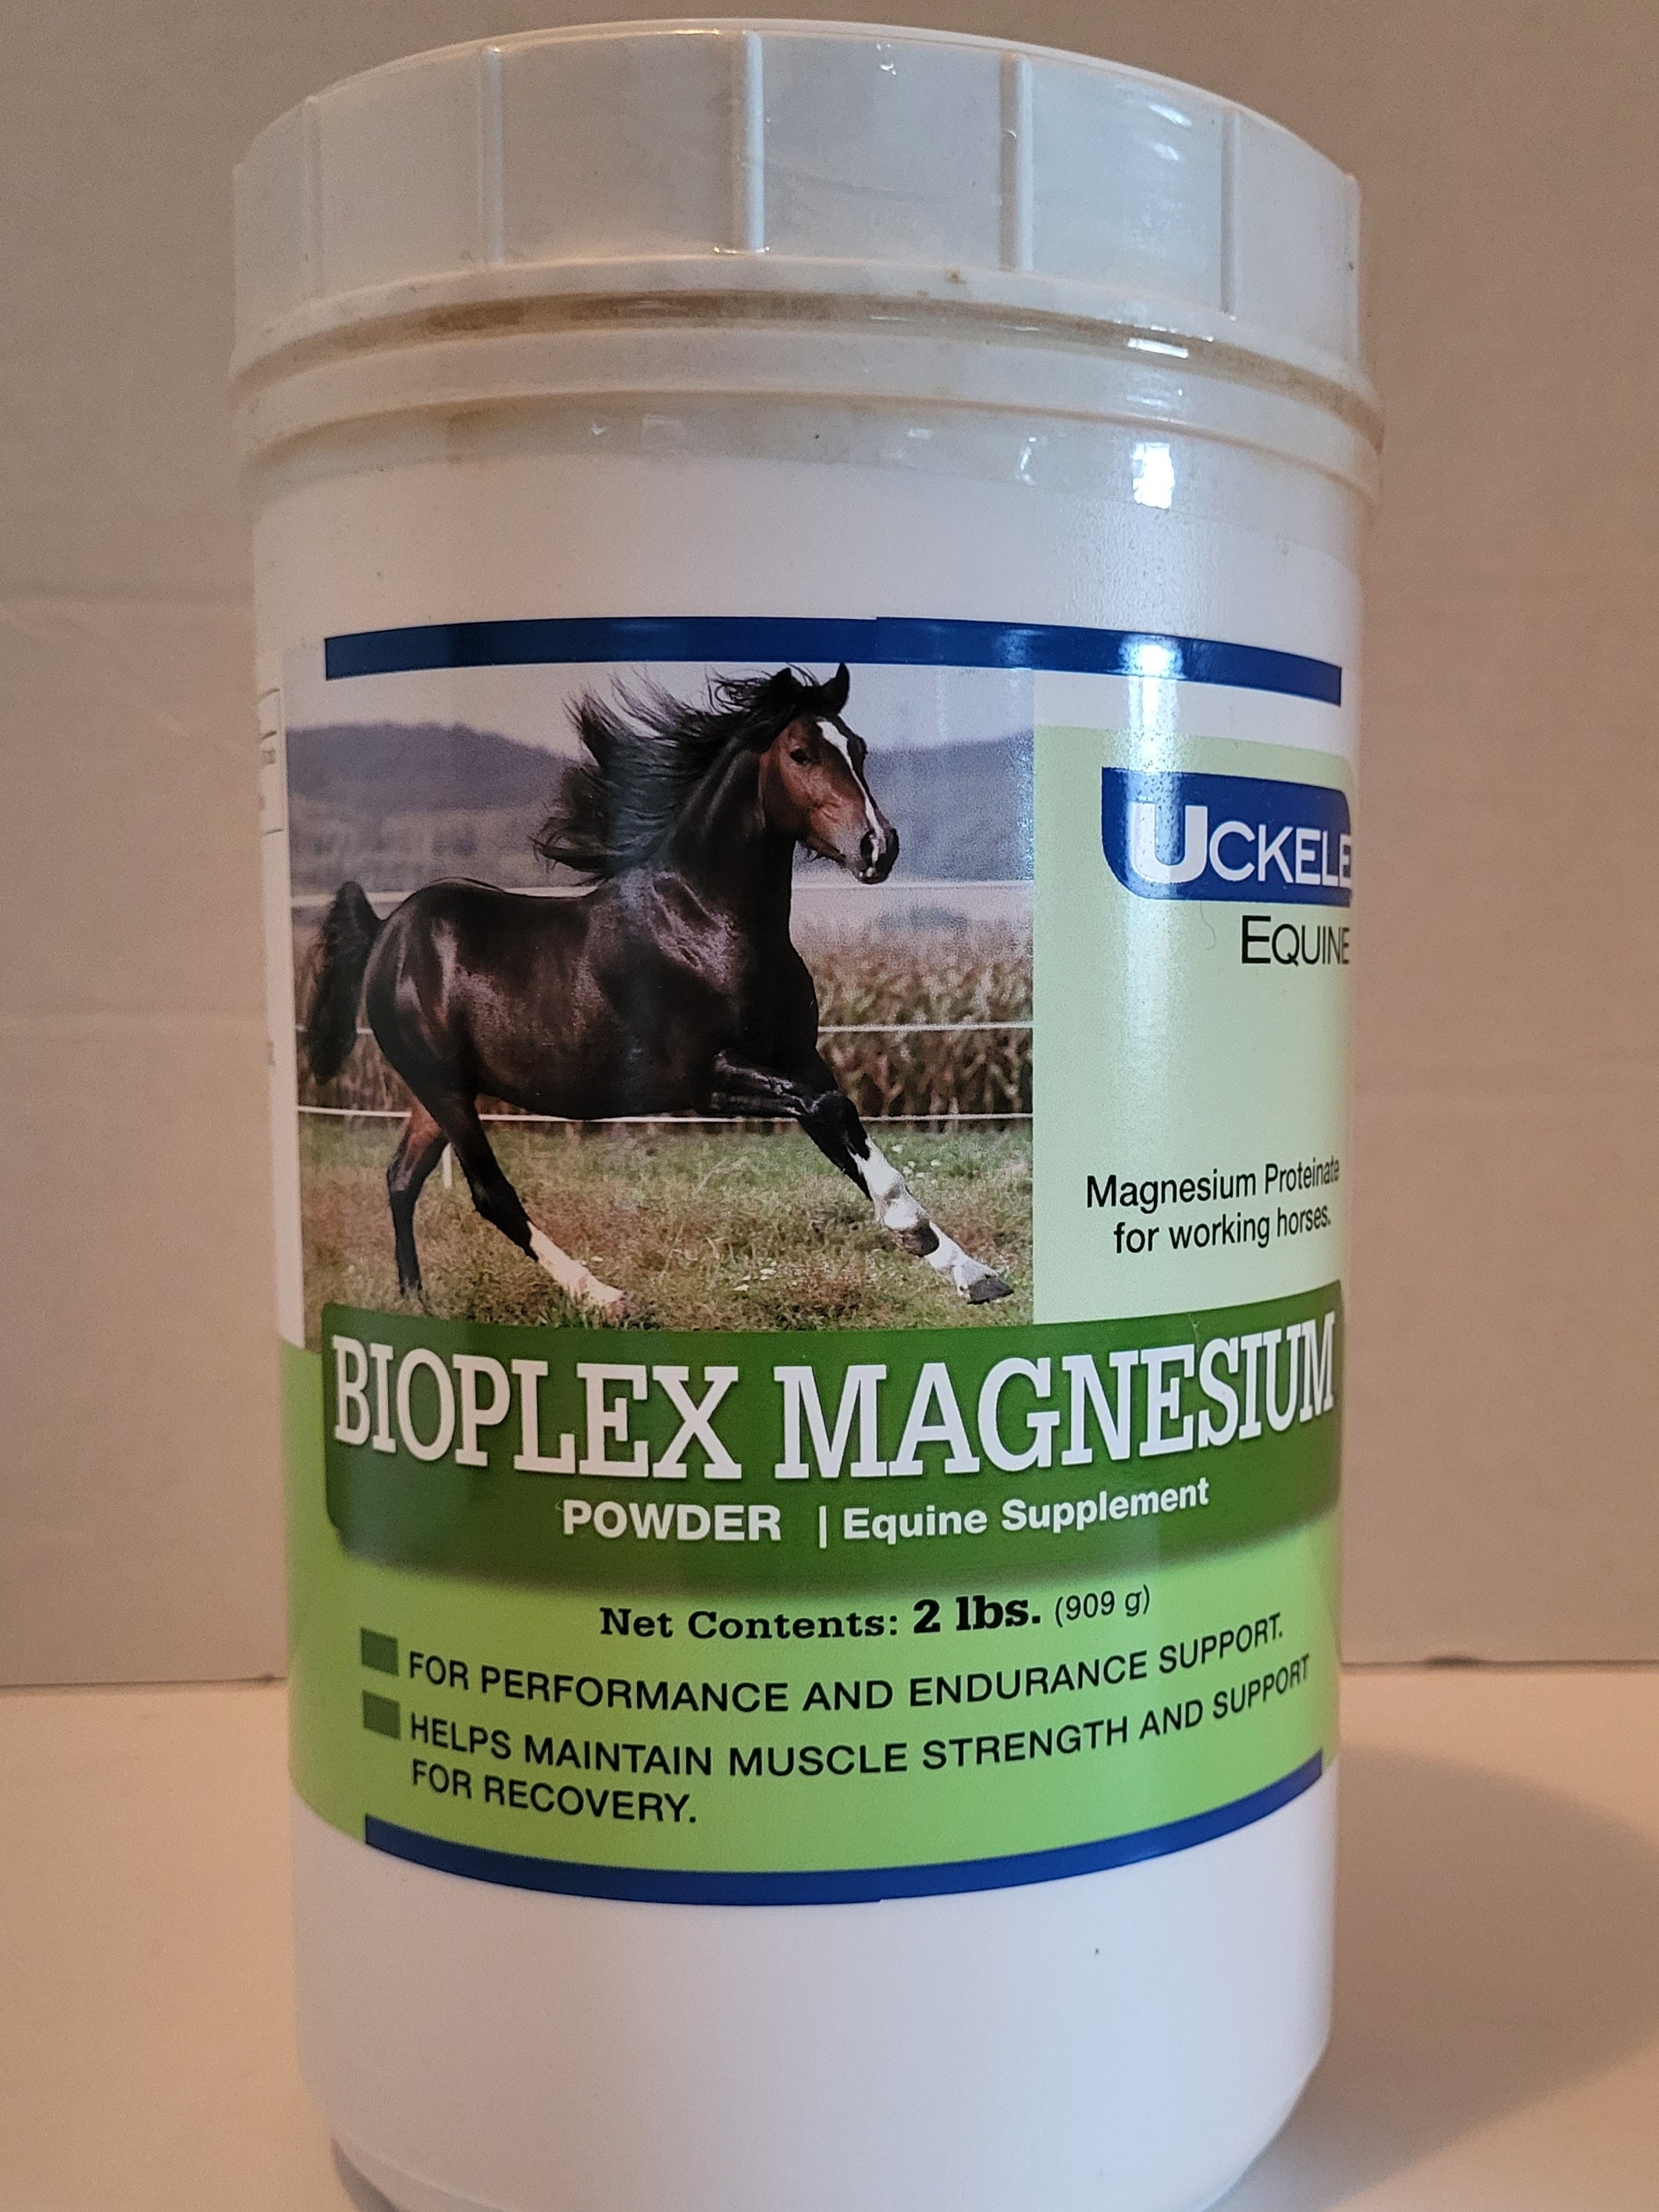 Uckele Bioplex Magnesium